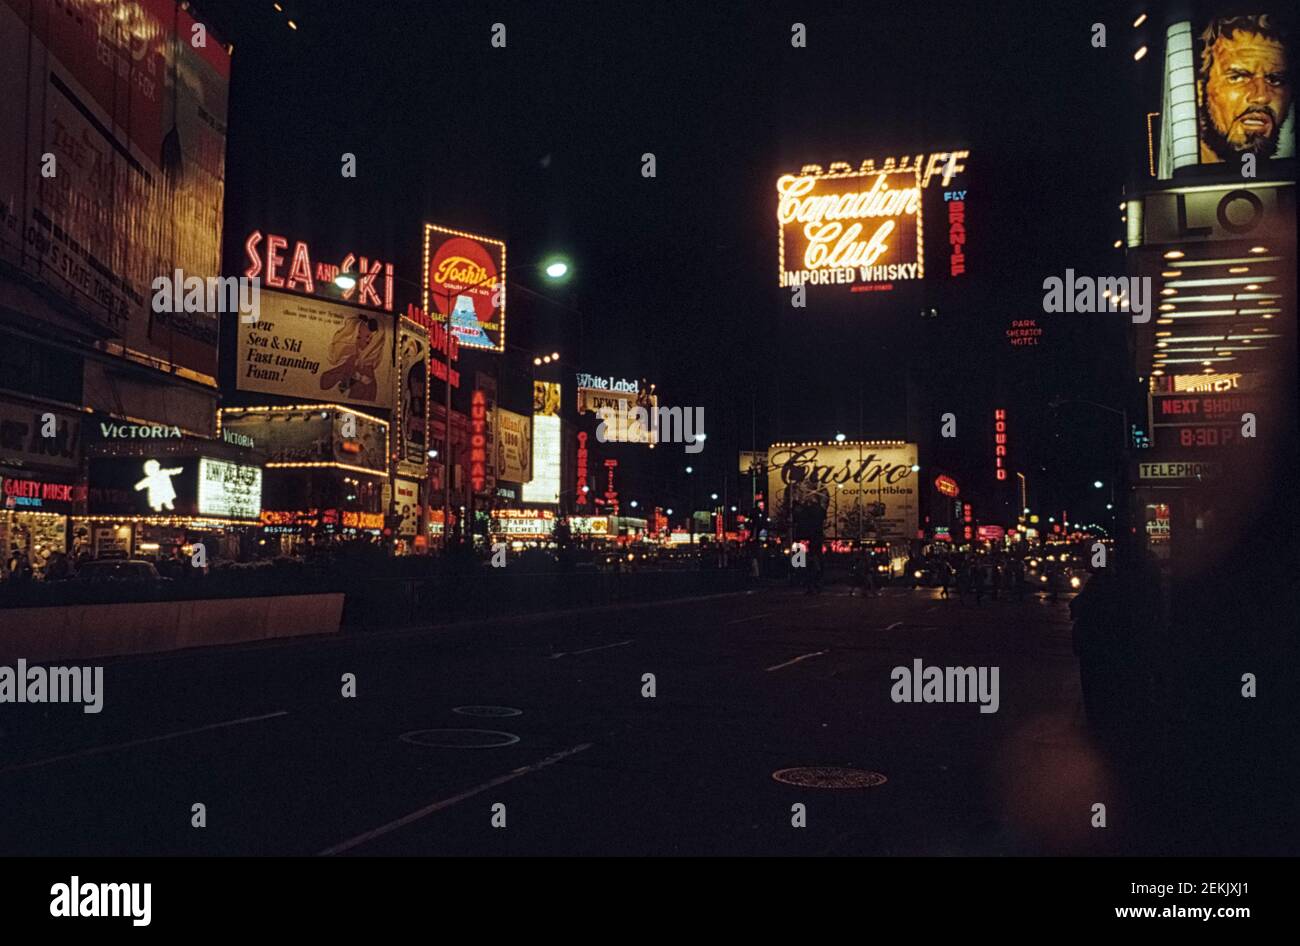 Am Times Square in der Nacht. Bunte Werbung erhellt den Platz. Broadway, Manhattan, York City, NYC, USA, 1965 Stockfoto